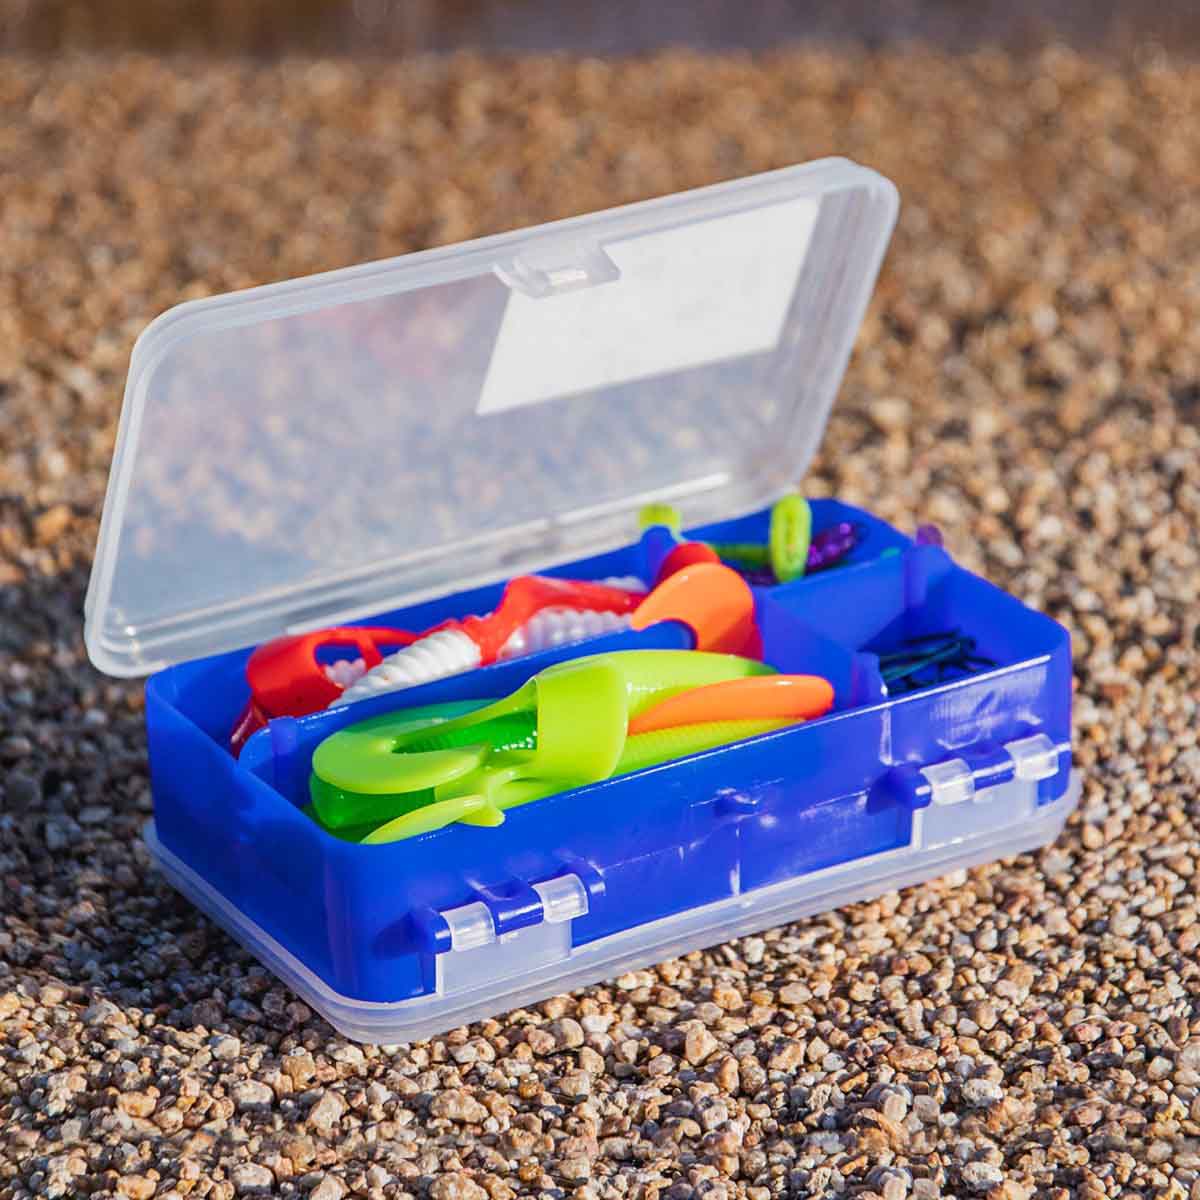 Portable Lure Box, Fishing Tackle Box Tackle Box Organizer Fishing